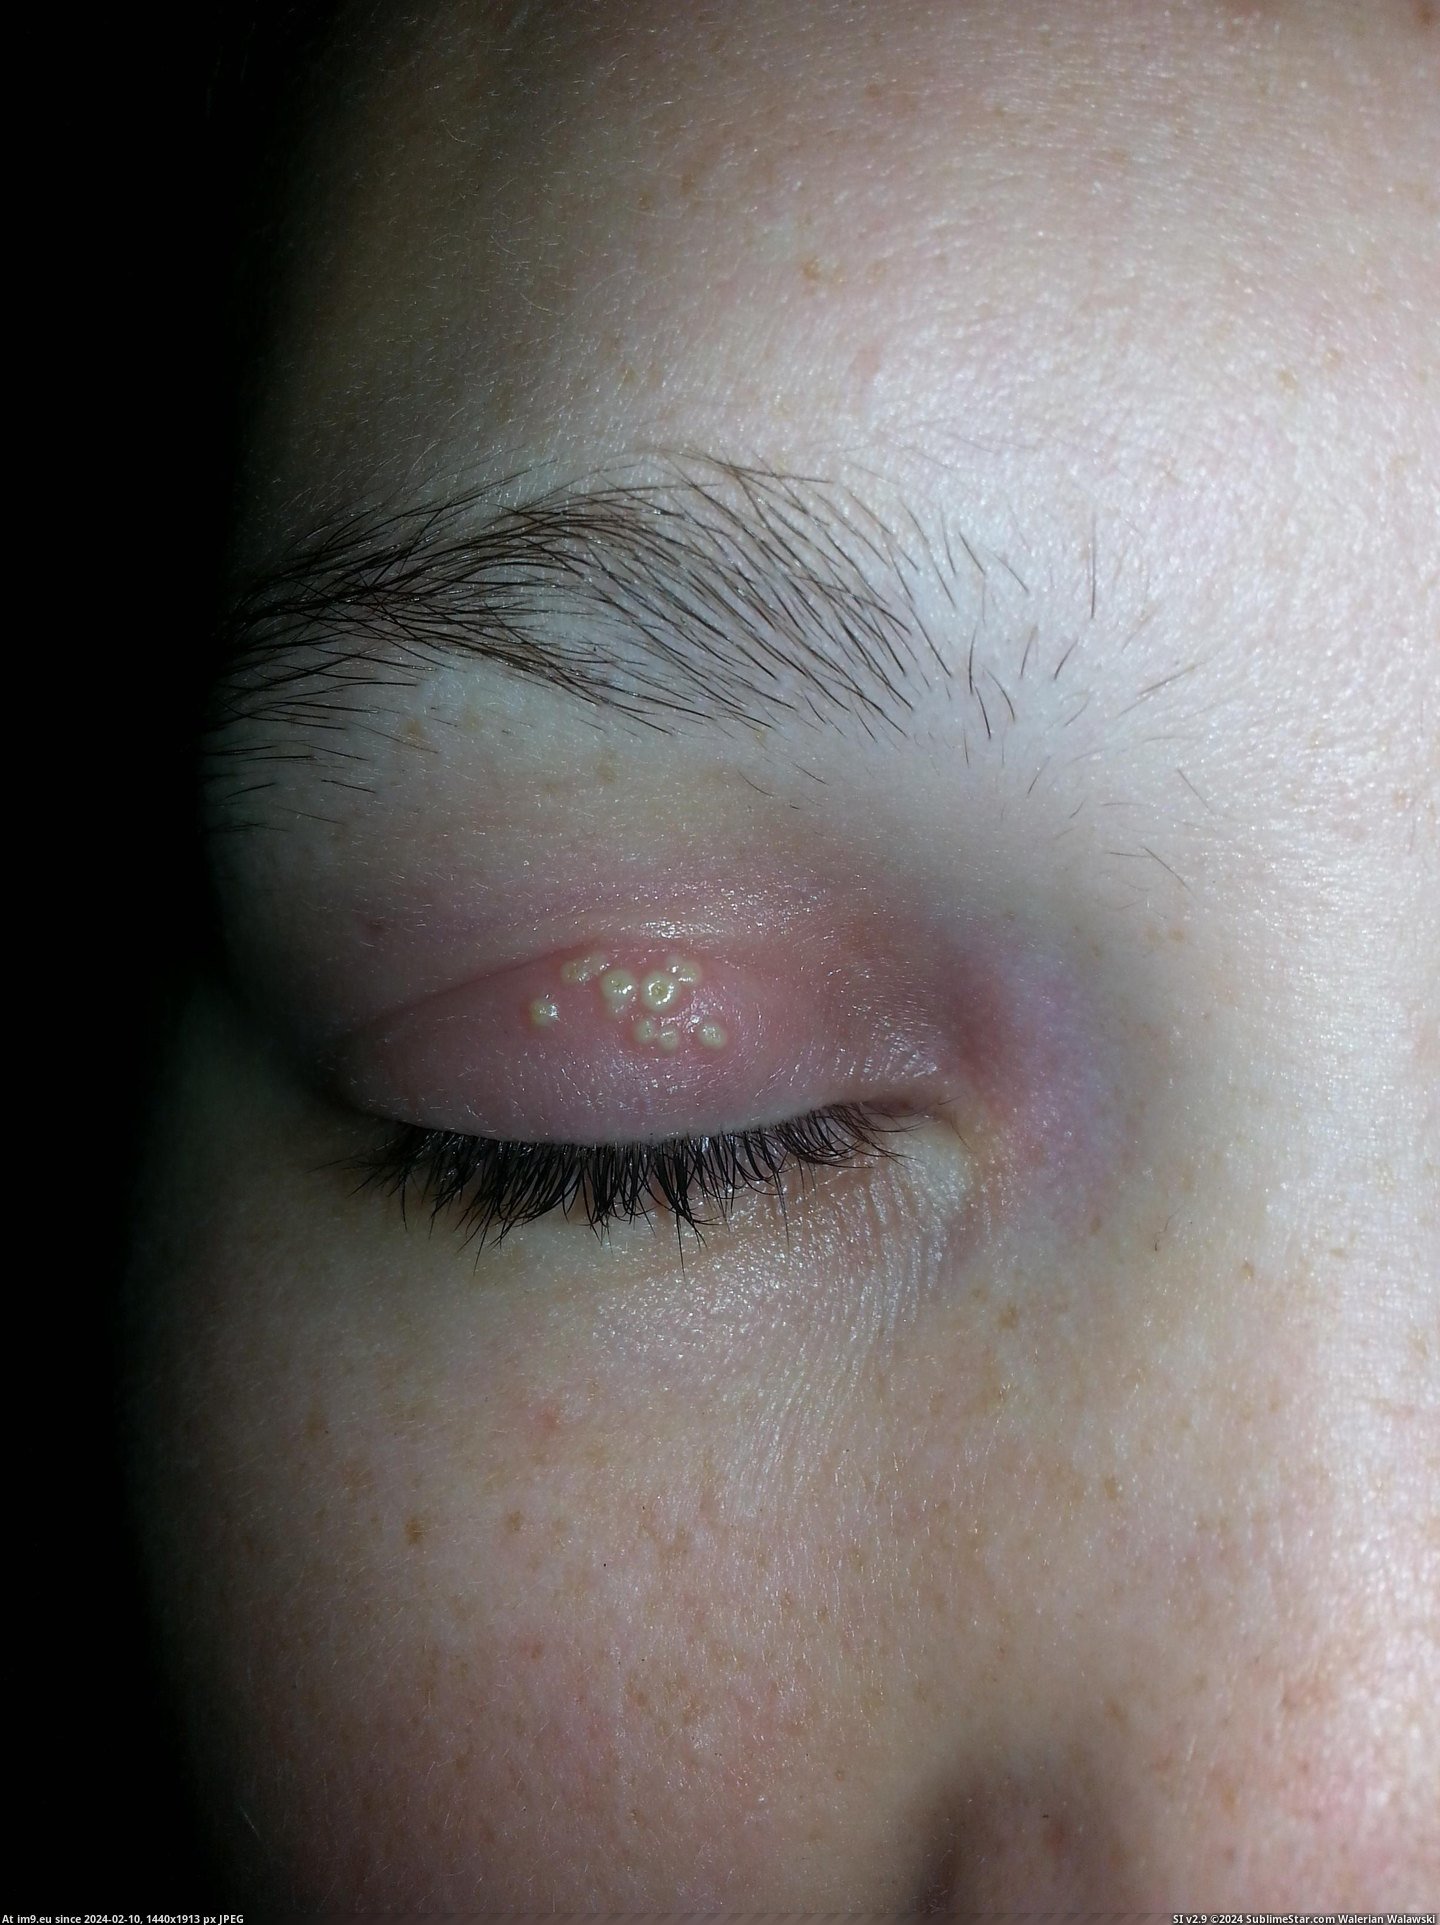 #Wtf #Woke #Eyelid #Wife [Wtf] My wife woke up with this on her eyelid. Wtf is it? Pic. (Bild von album My r/WTF favs))